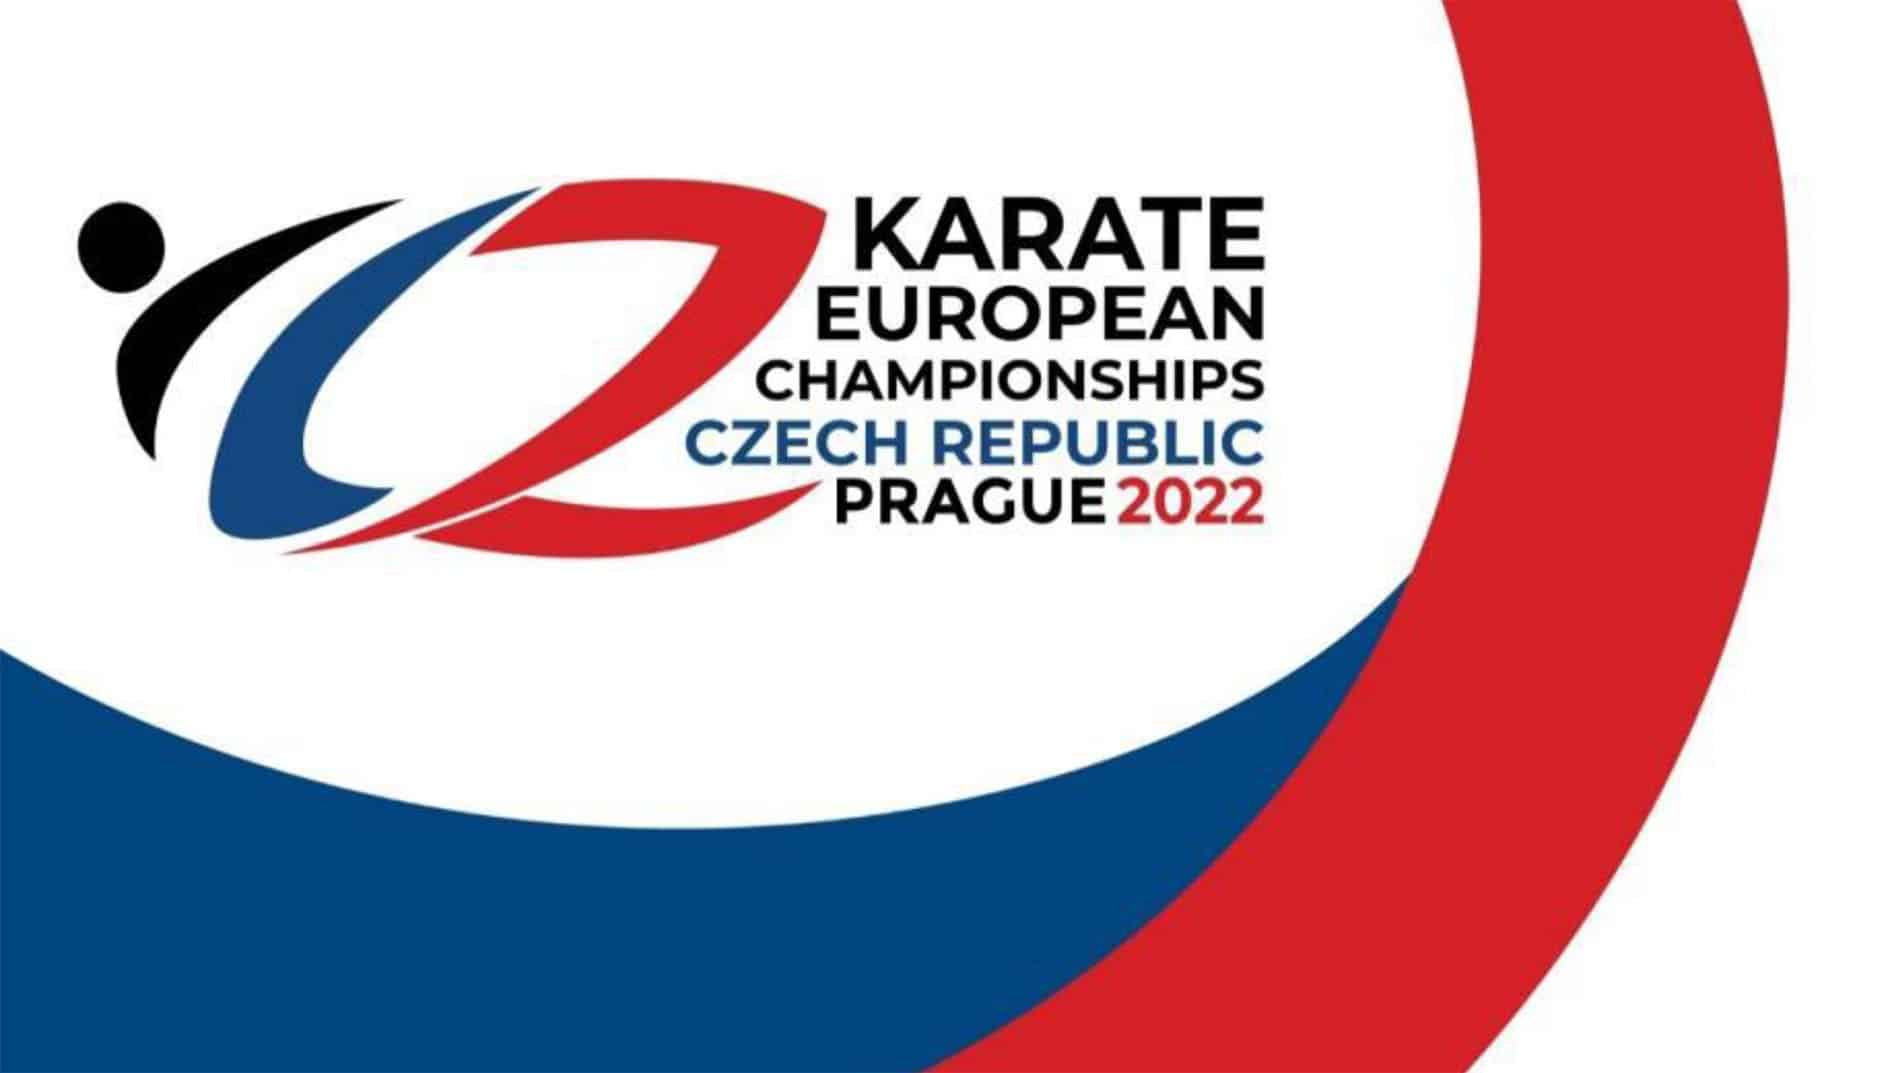 Η εθνική ομάδα Καράτε για την Πράγα όπου θα διεξαχθεί το Ευρωπαϊκό Πρωτάθλημα Εφήβων, Νεανίδων, Νέων και U21